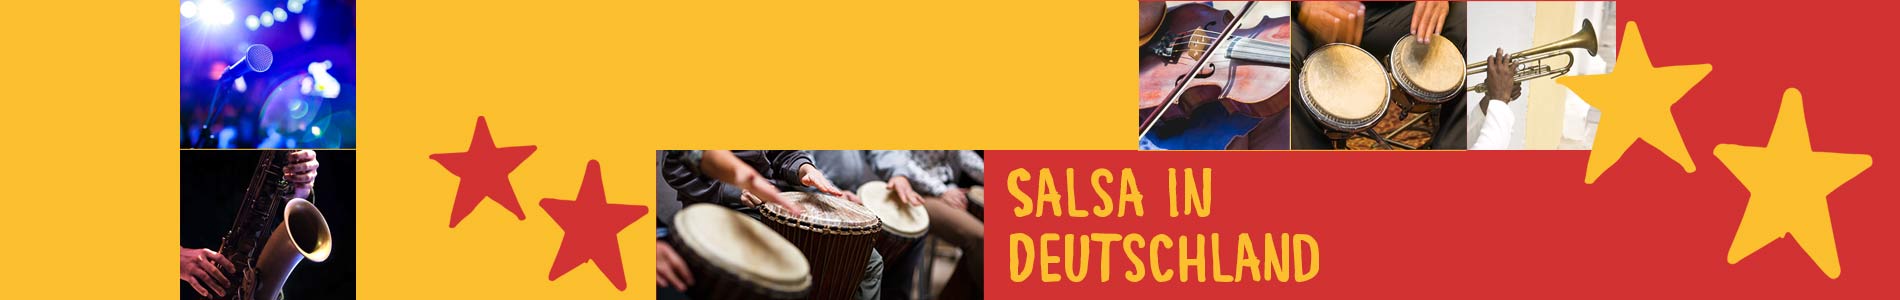 Salsa in Denklingen – Salsa lernen und tanzen, Tanzkurse, Partys, Veranstaltungen